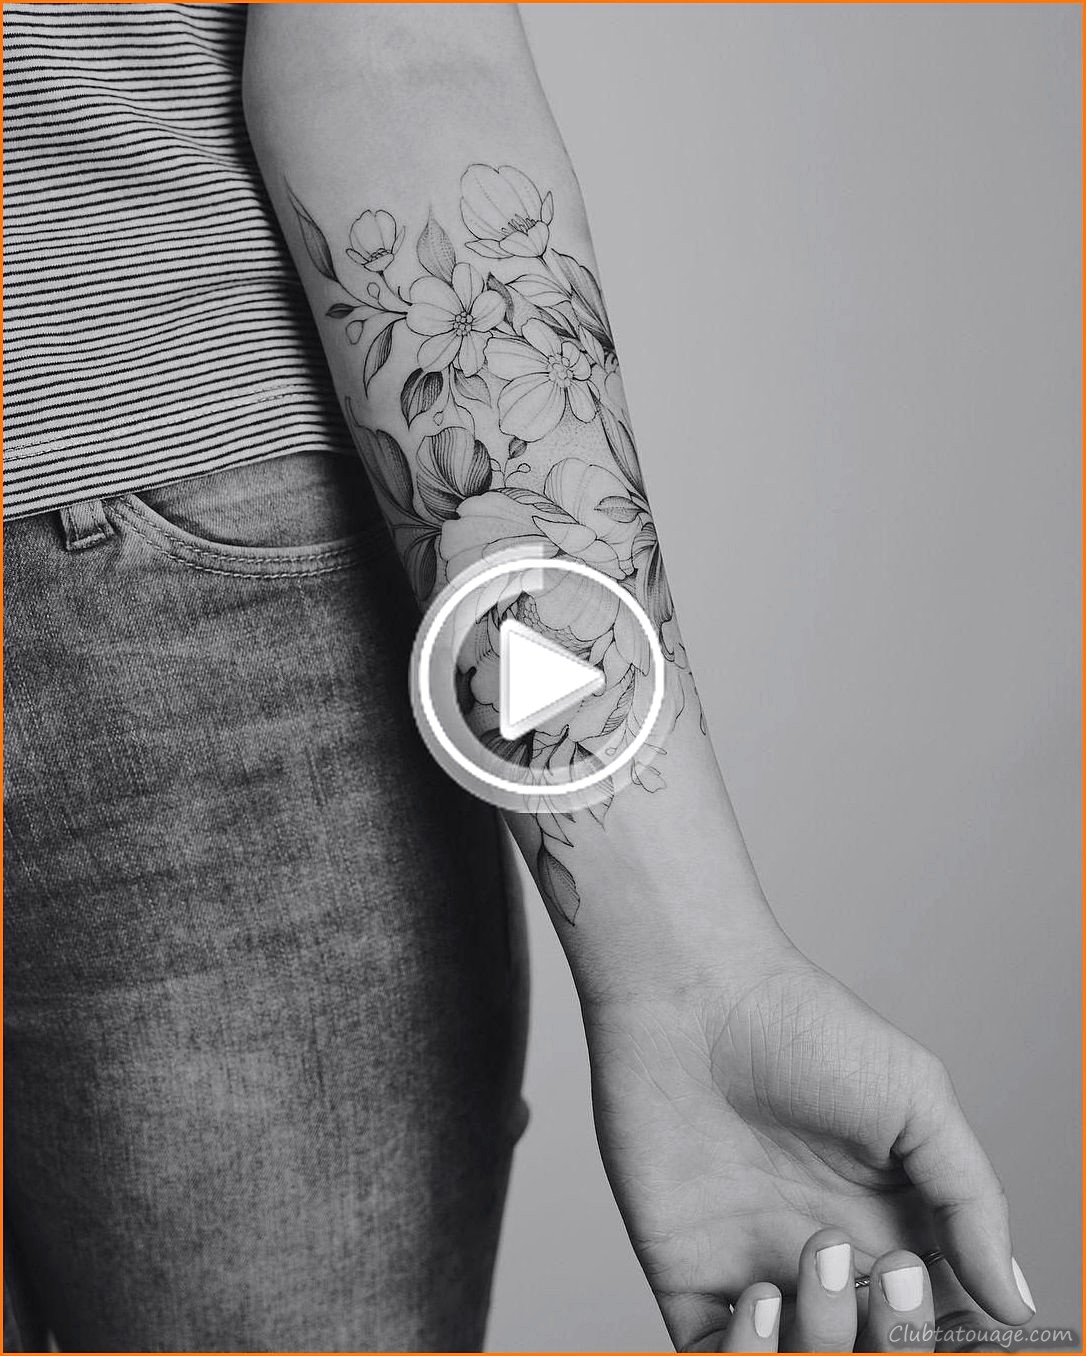 Modèles à la recherche de modèles de tatouages sur les bras avant